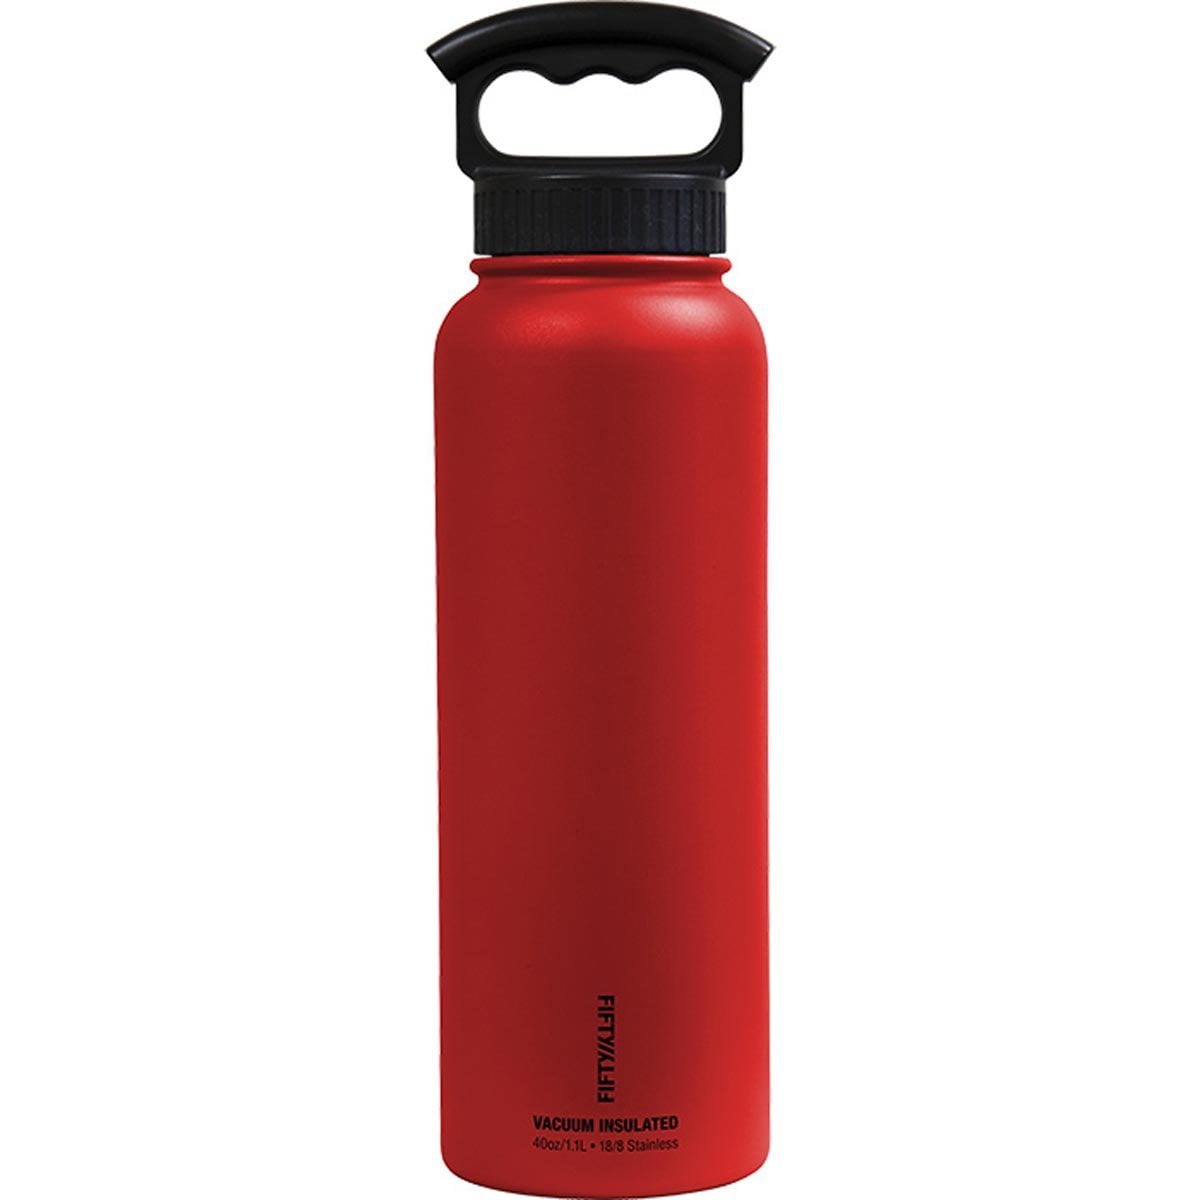 Aquapelli Vacuum Insulated Water Bottle, 18 Ounces, Aurora Red